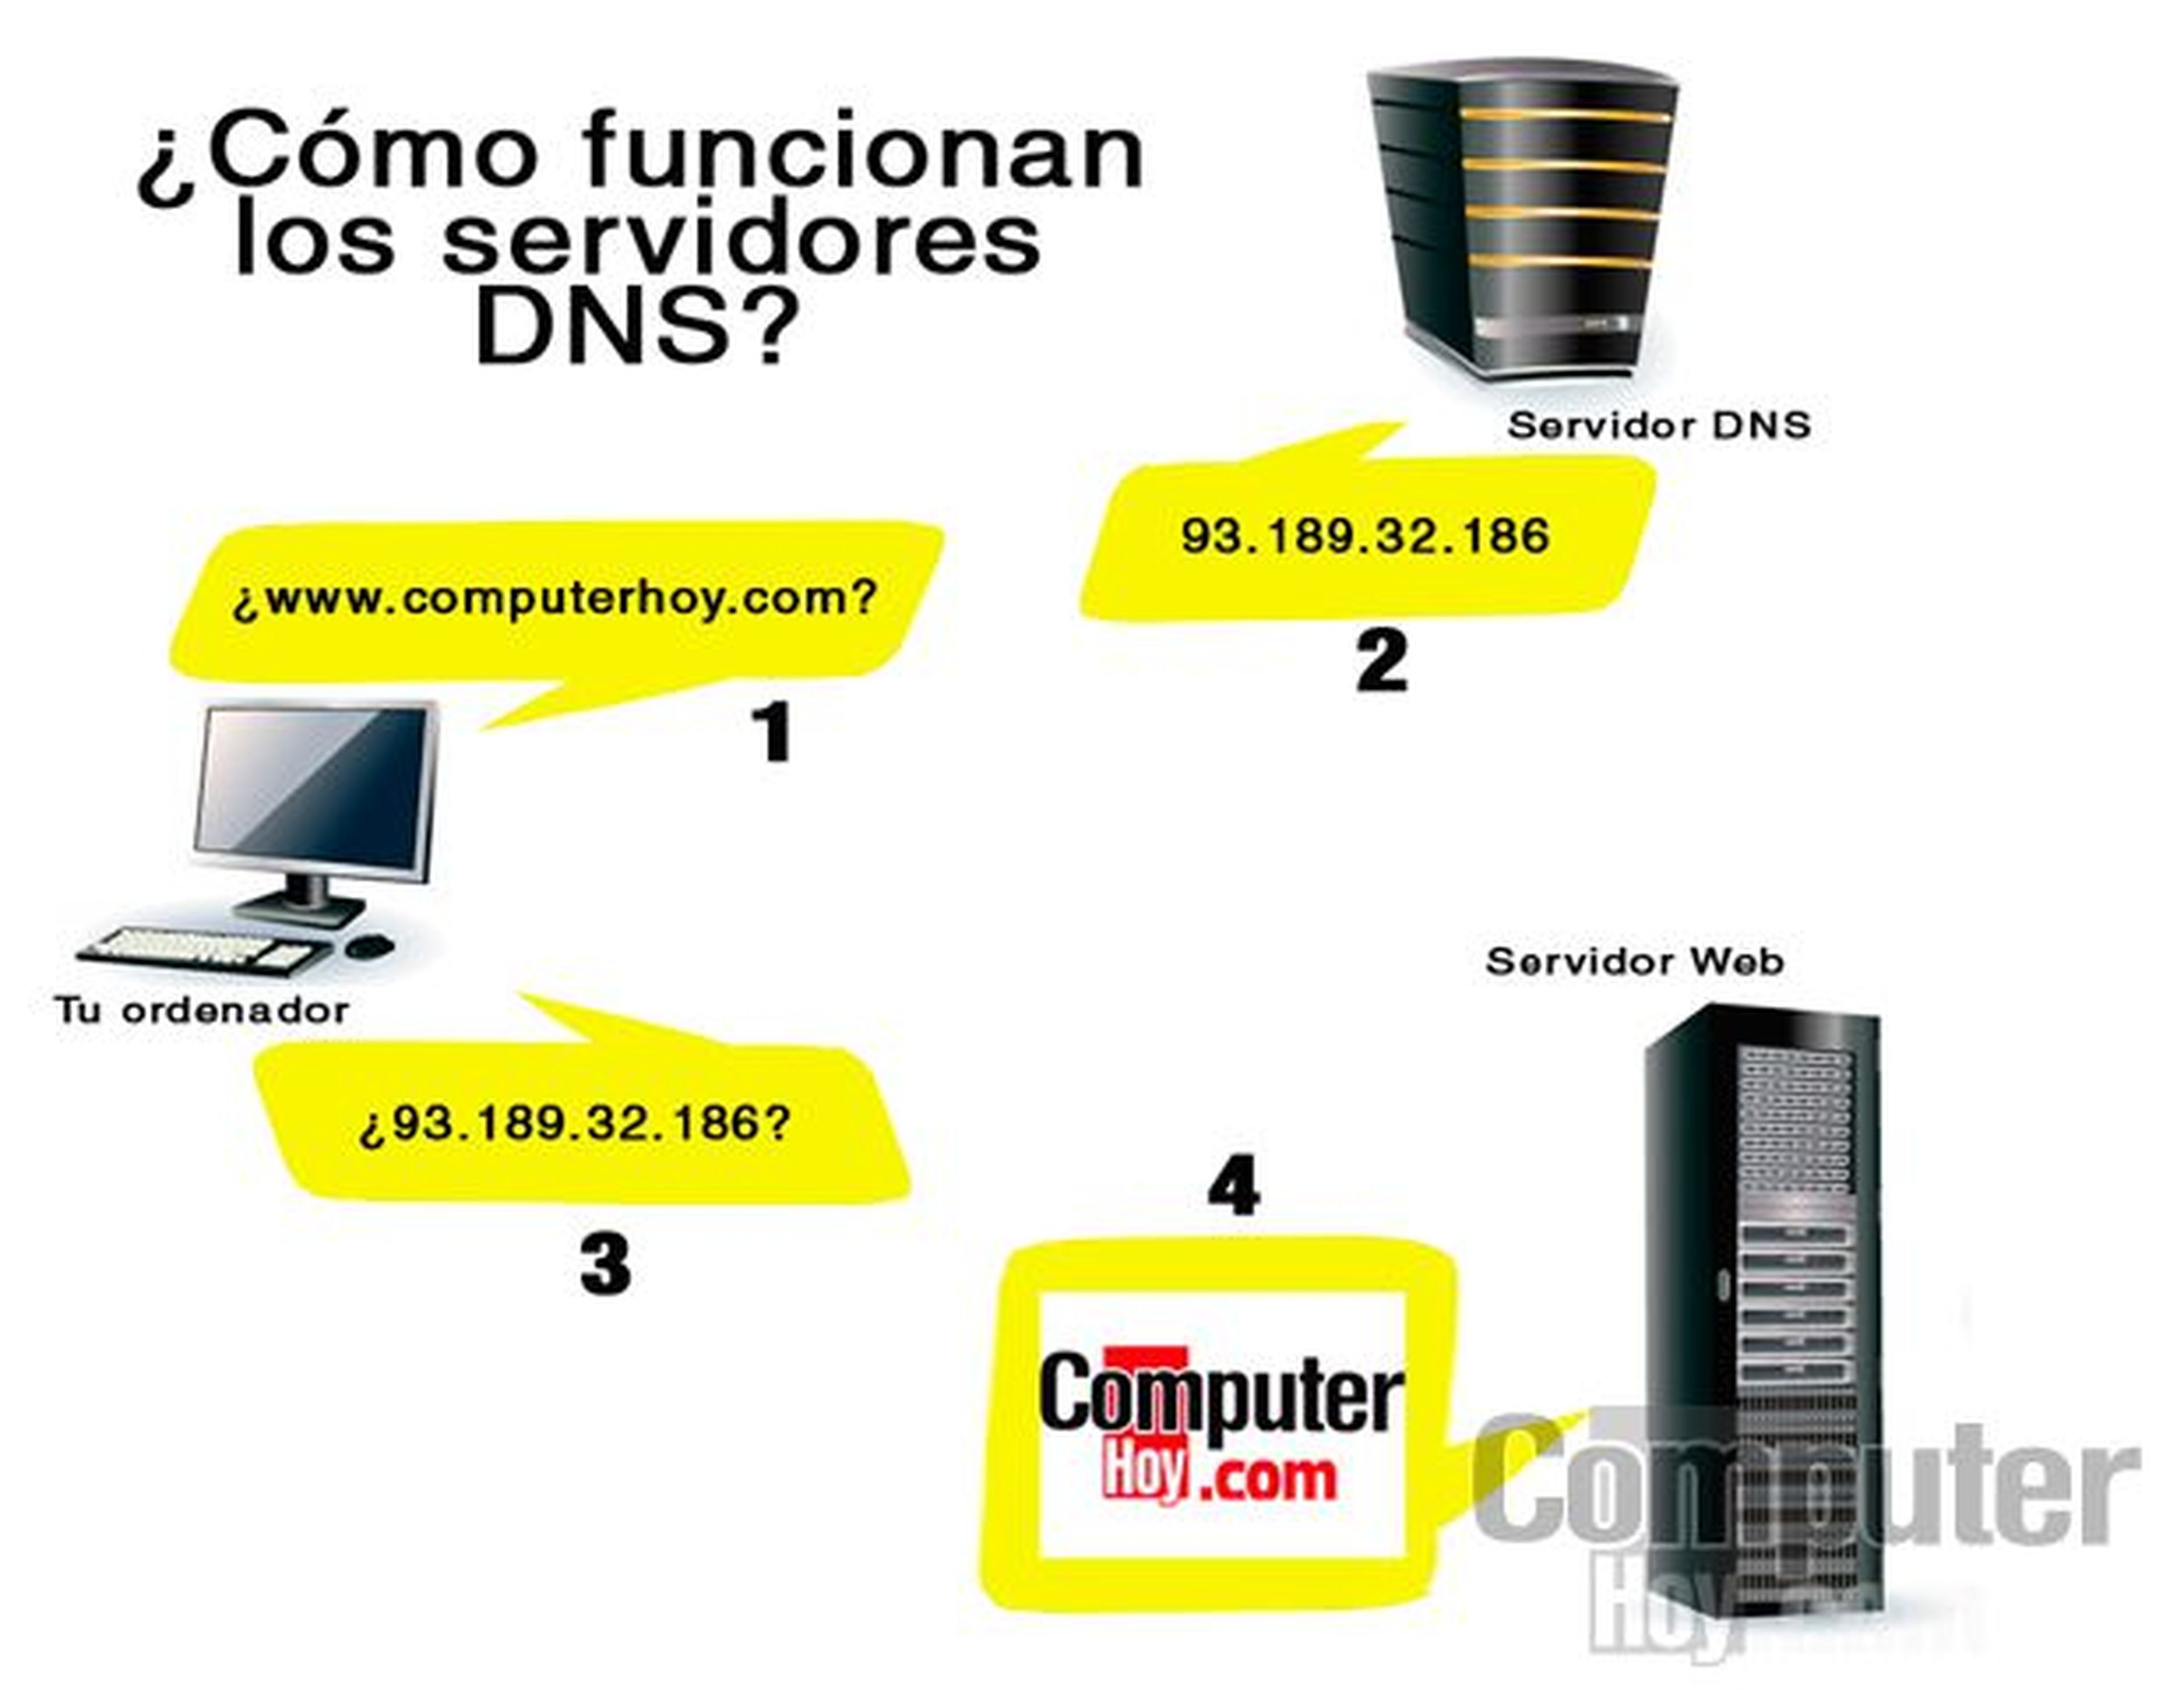 ¿Qué son los DNS?